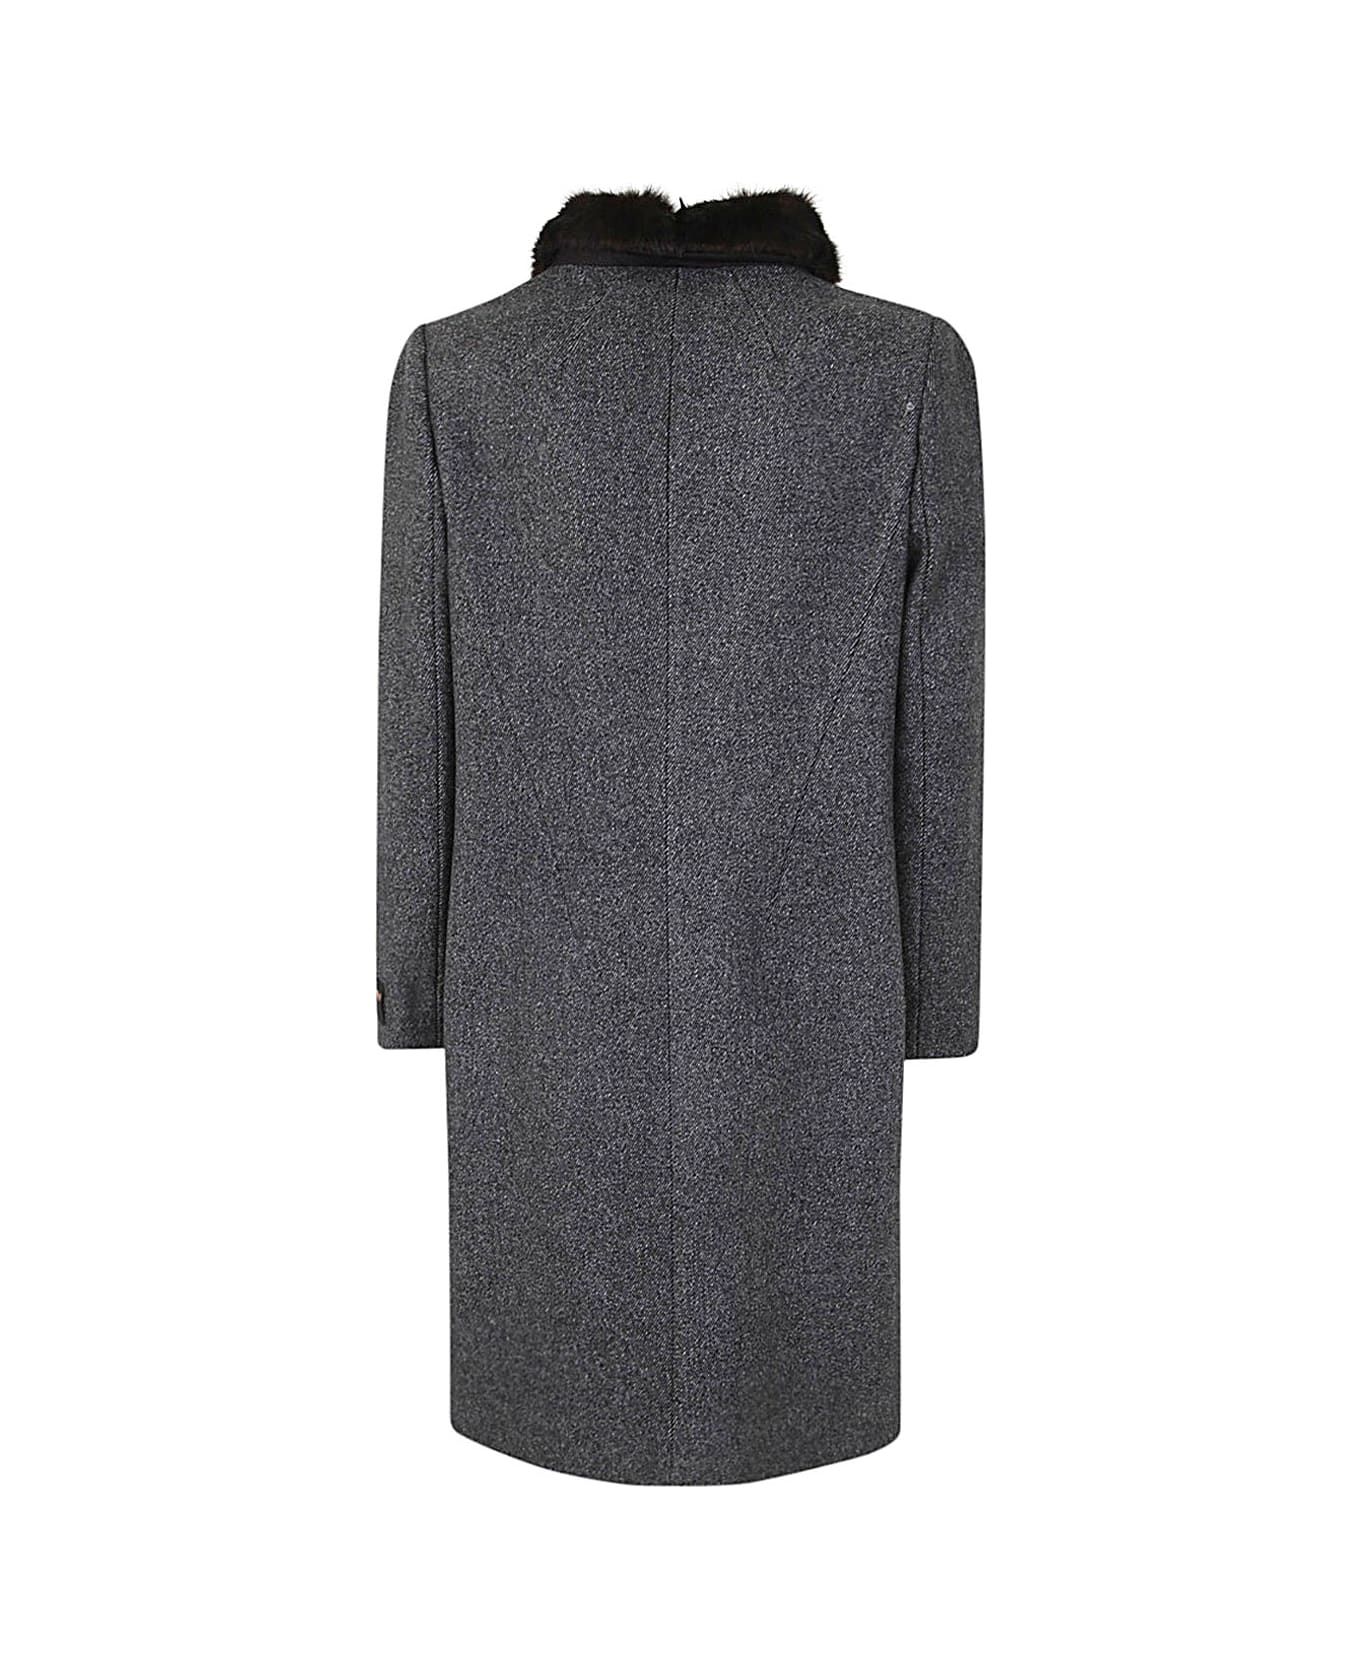 N.21 Short Coat - Grey Black Melange